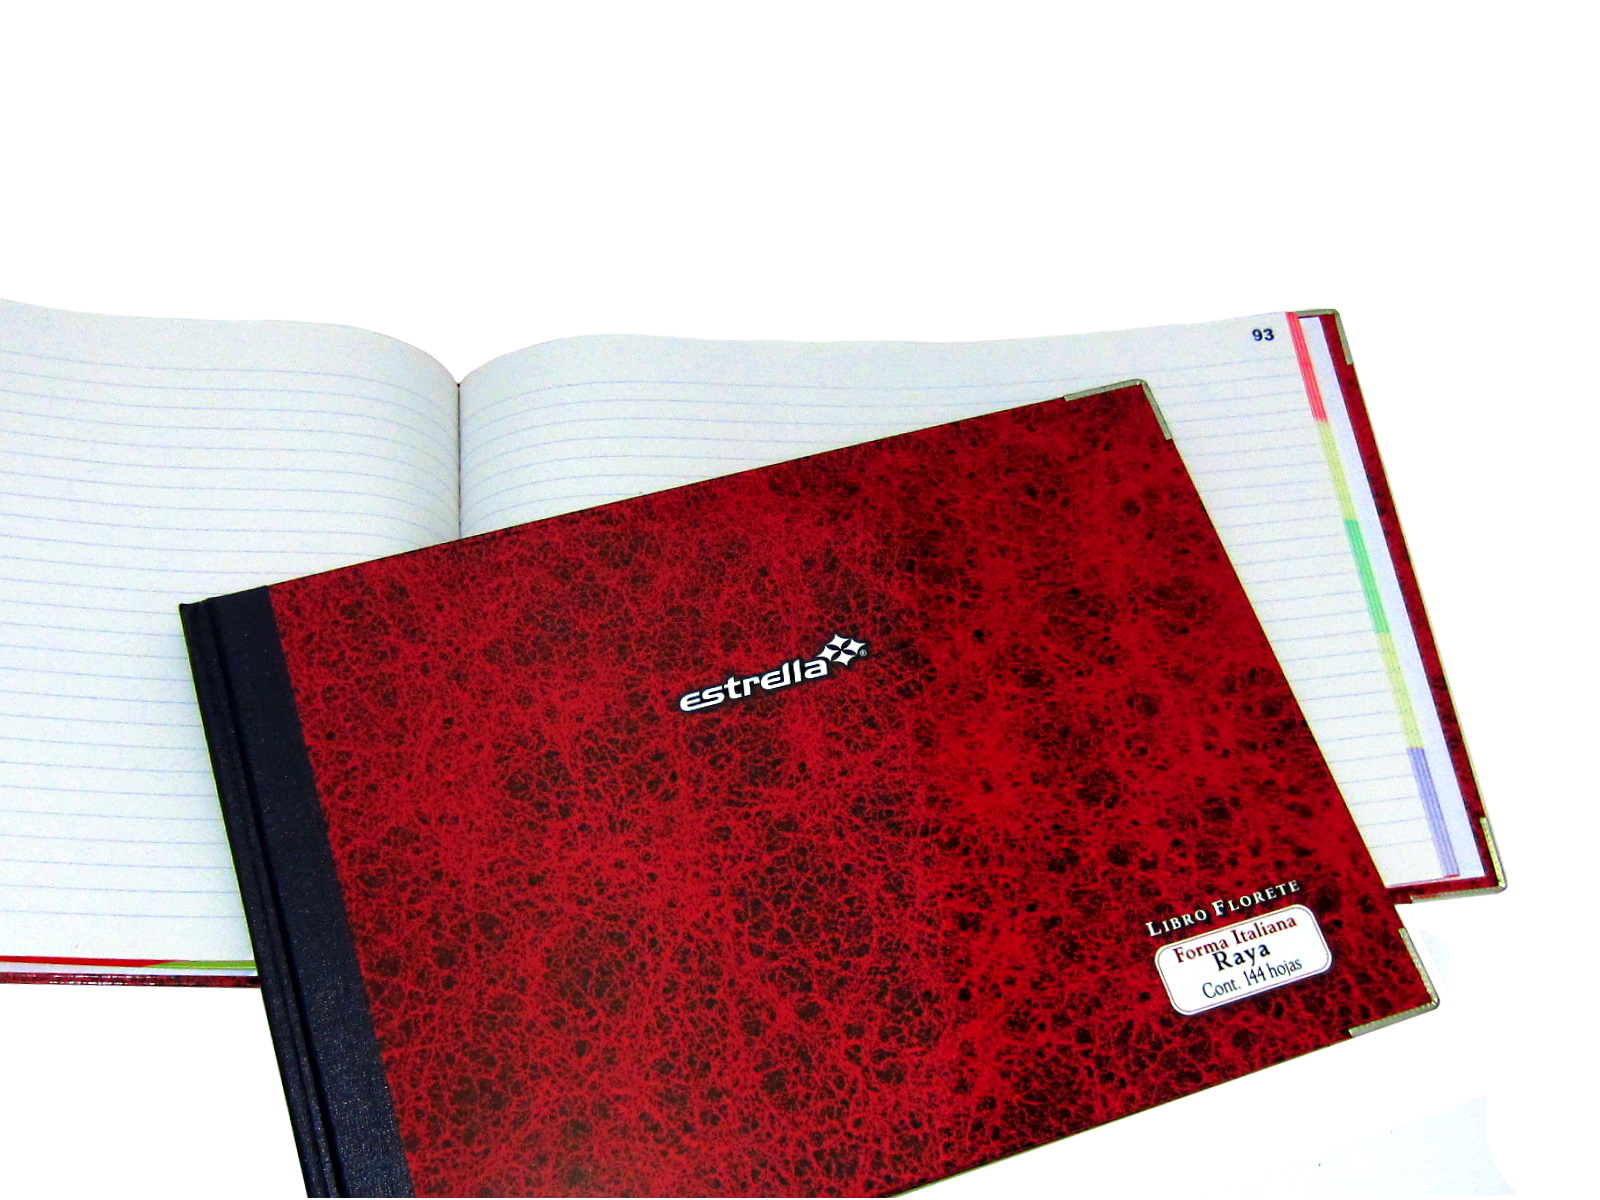 Cuaderno con dibujo de nuestro catálogo en la portada, de 15x21cm